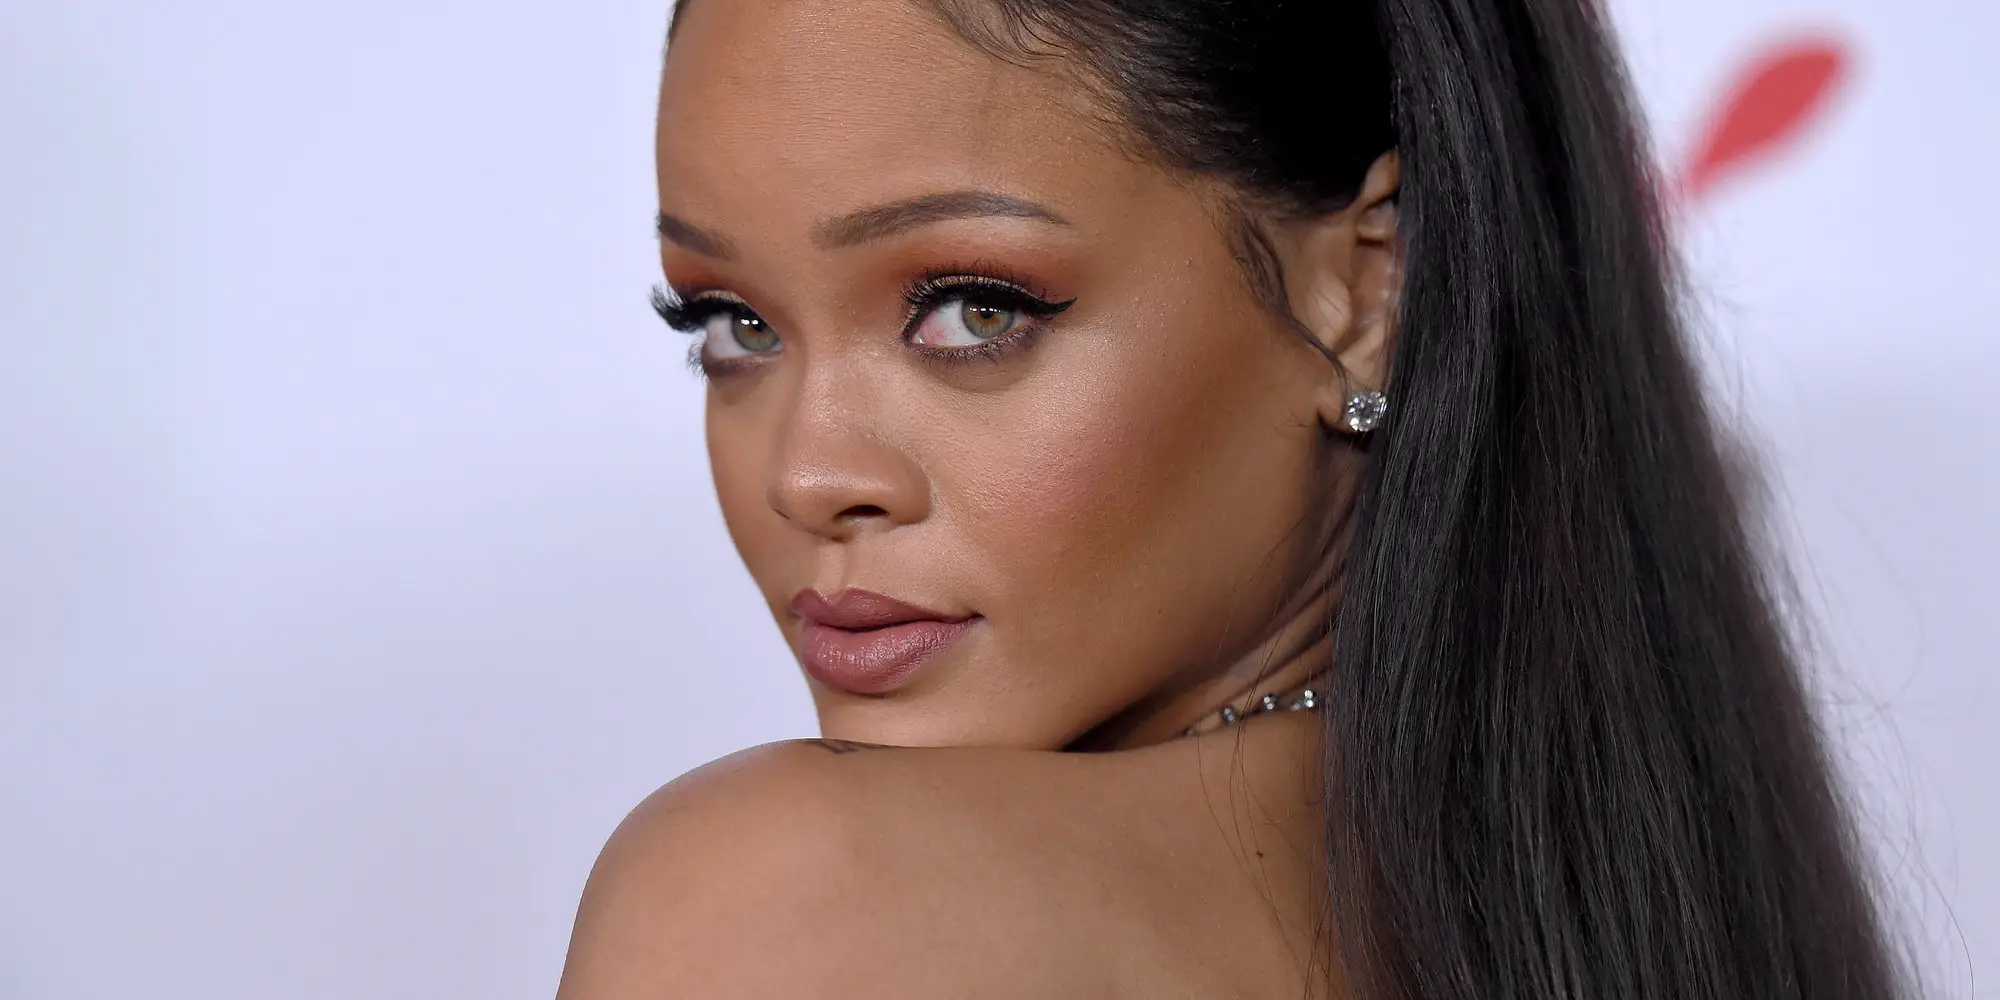 Filtraron fotos de Rihanna sin Photoshop y es duramente criticada por su  físico (+Fotos) 